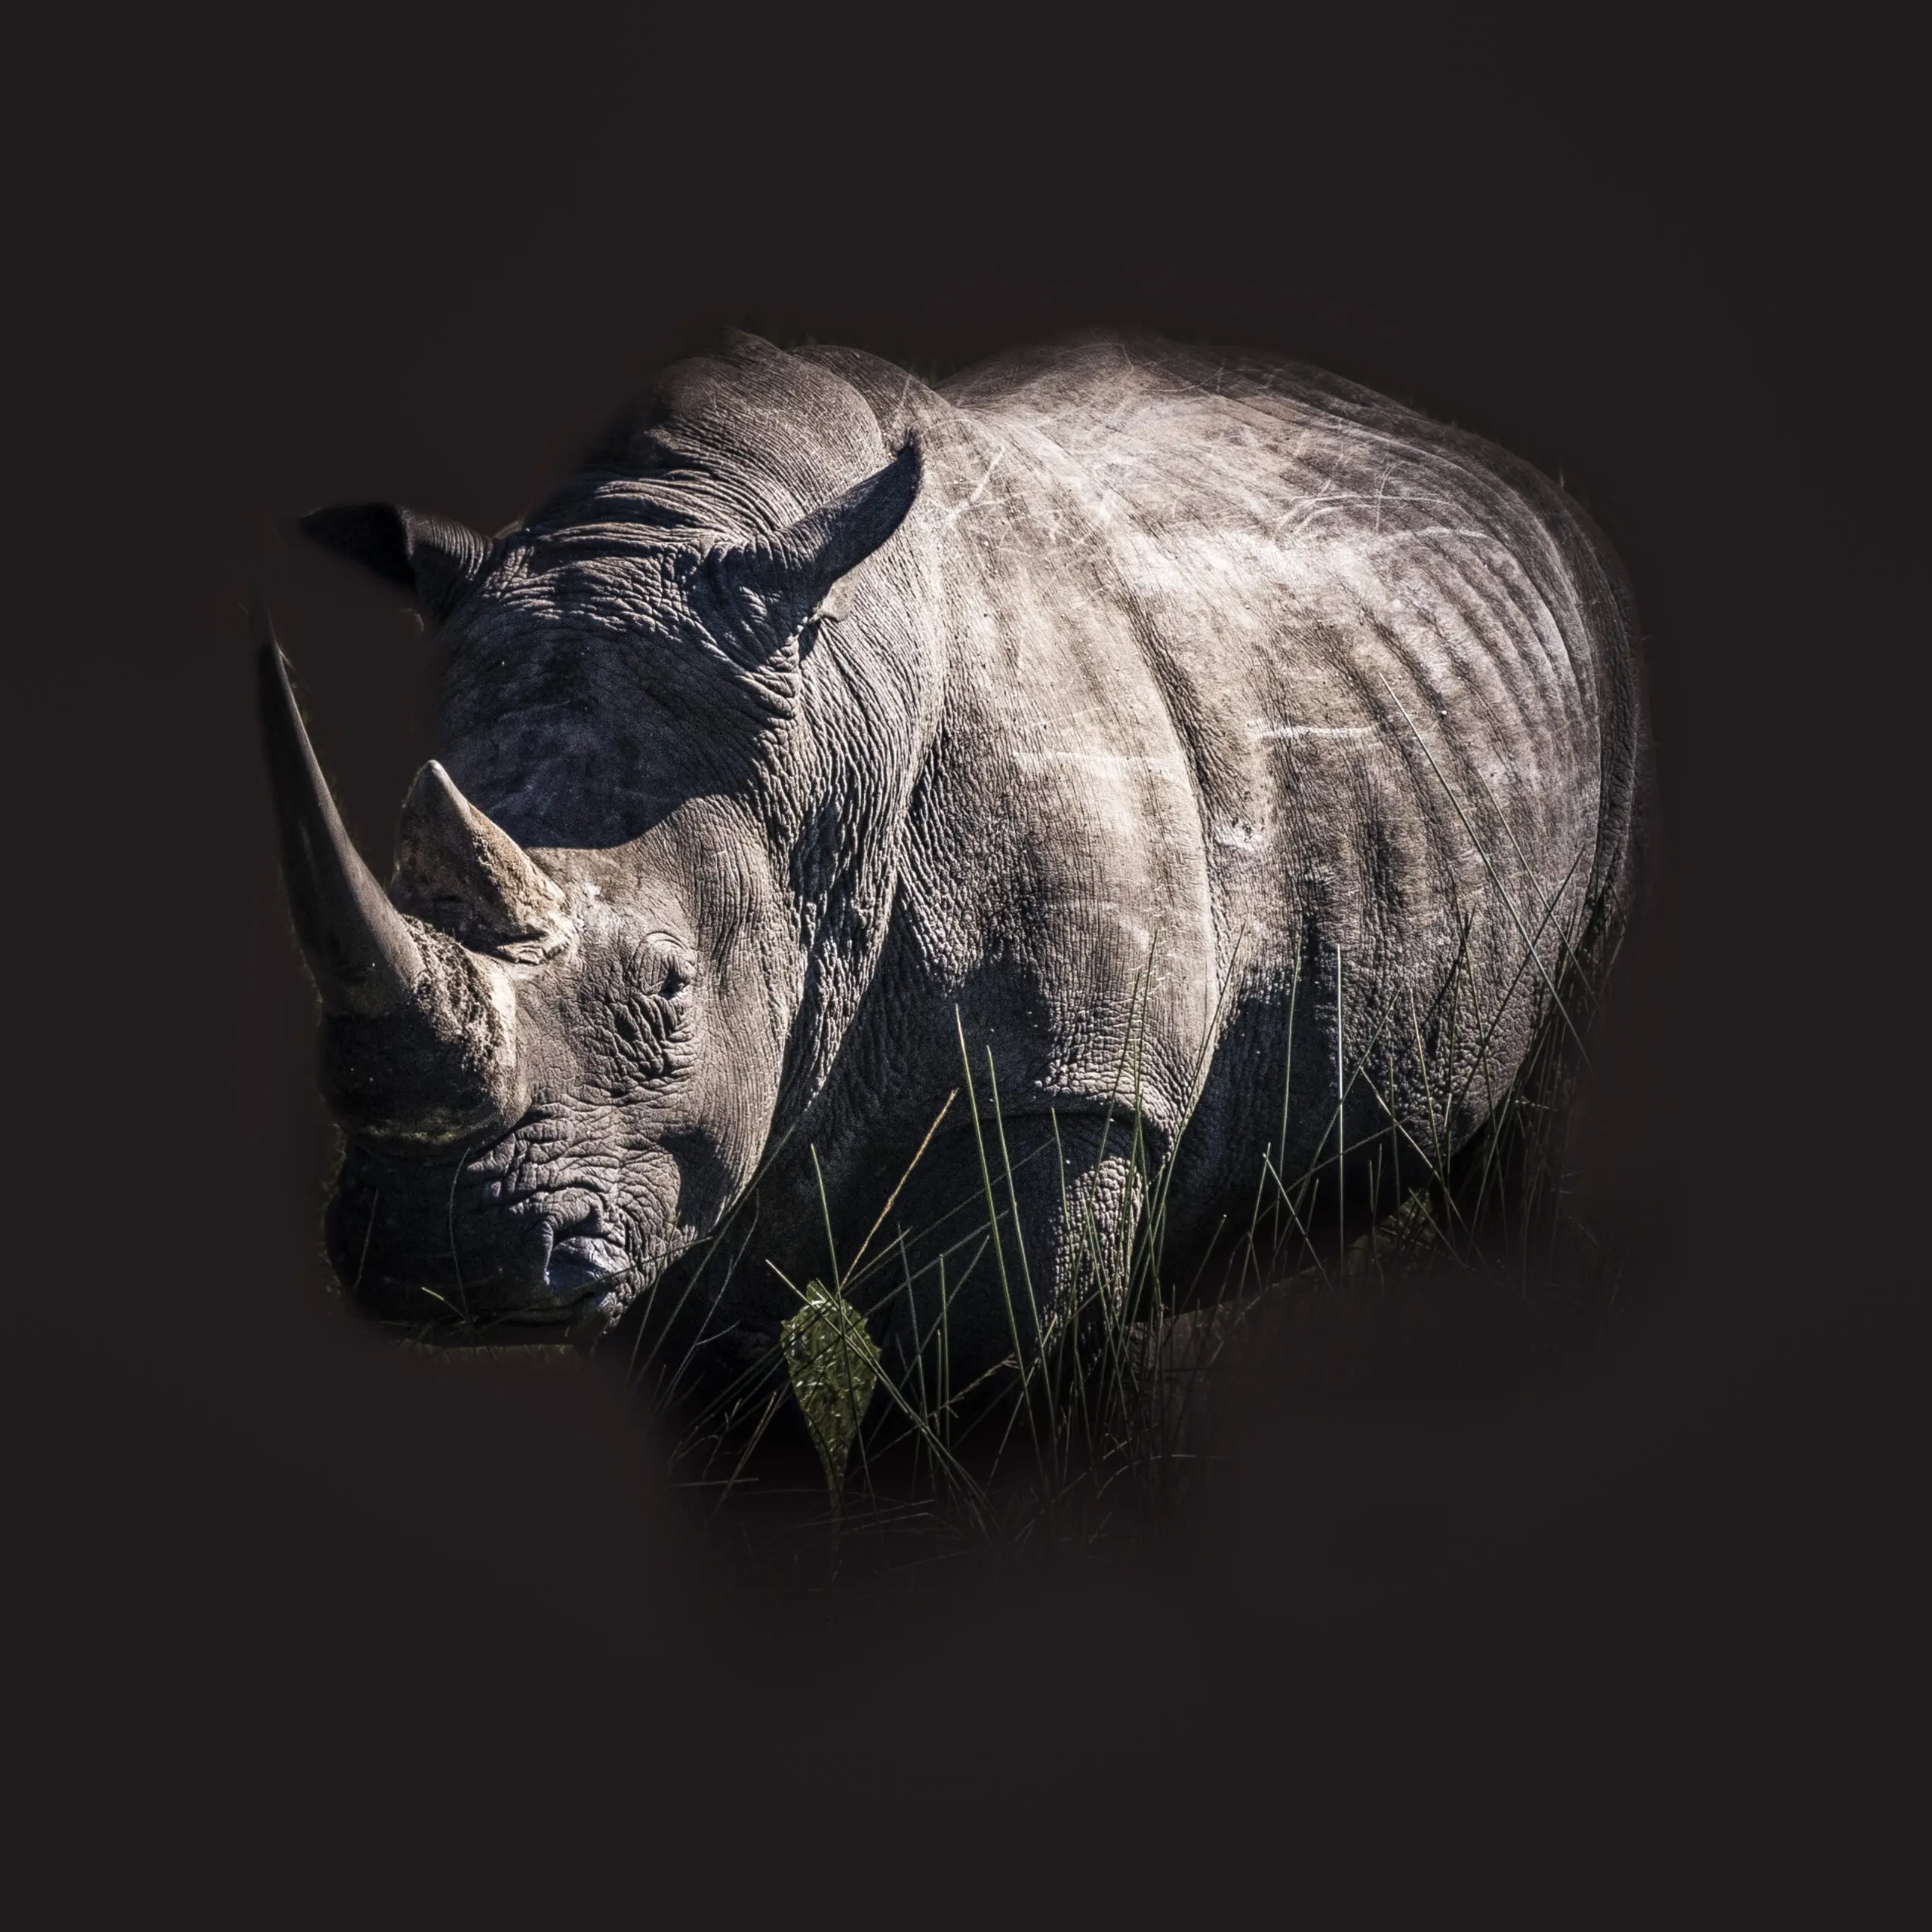 Wandbild (4865) White Rhino präsentiert: Tiere,Wildtiere,Aus Afrika